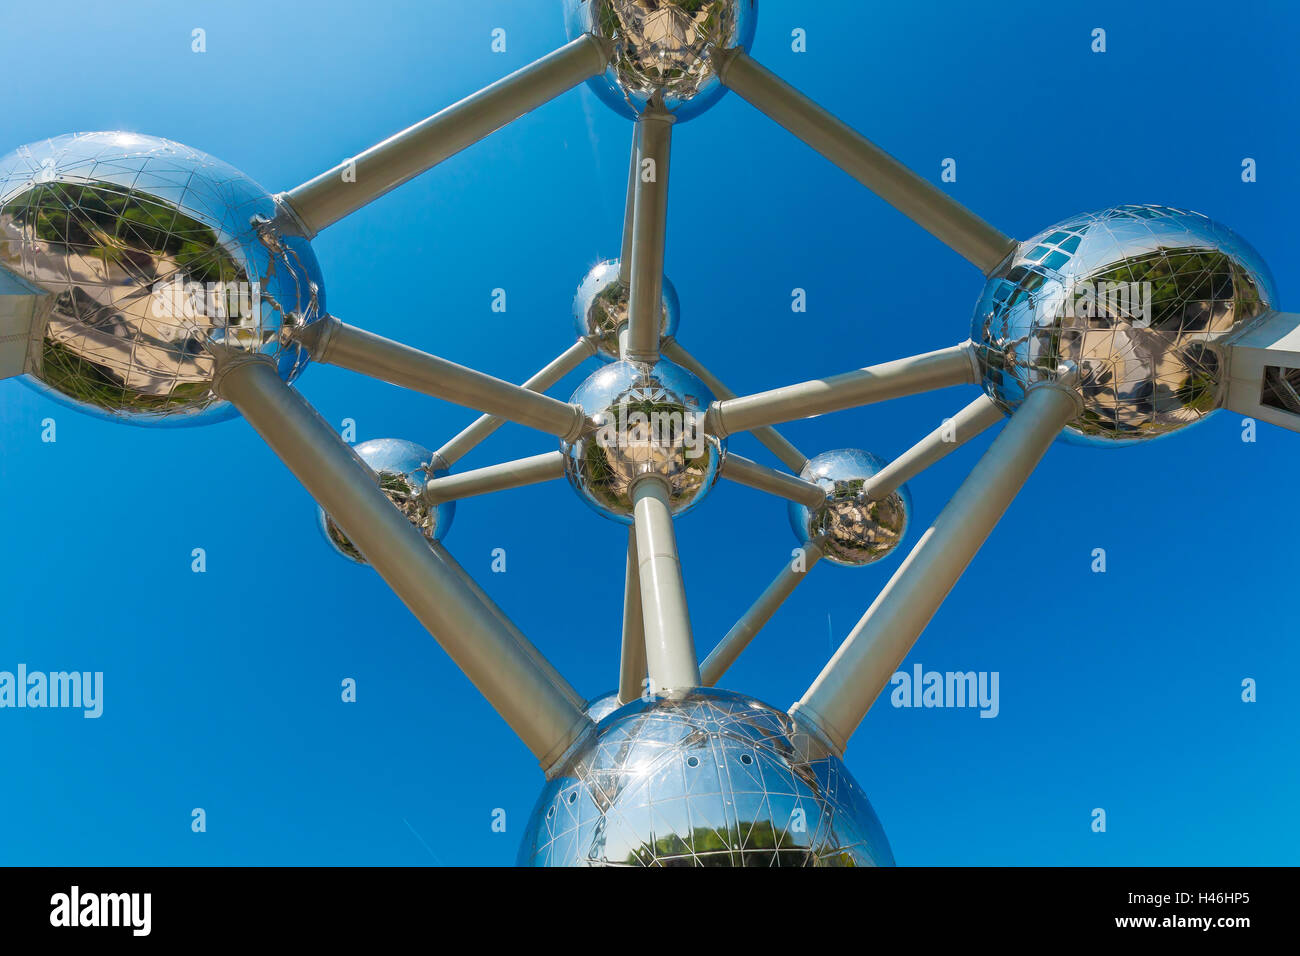 Bruxelles, Belgique - le 5 avril 2008 : l'Atomium, monument à la forme d'une maille d'un cristal de fer Banque D'Images